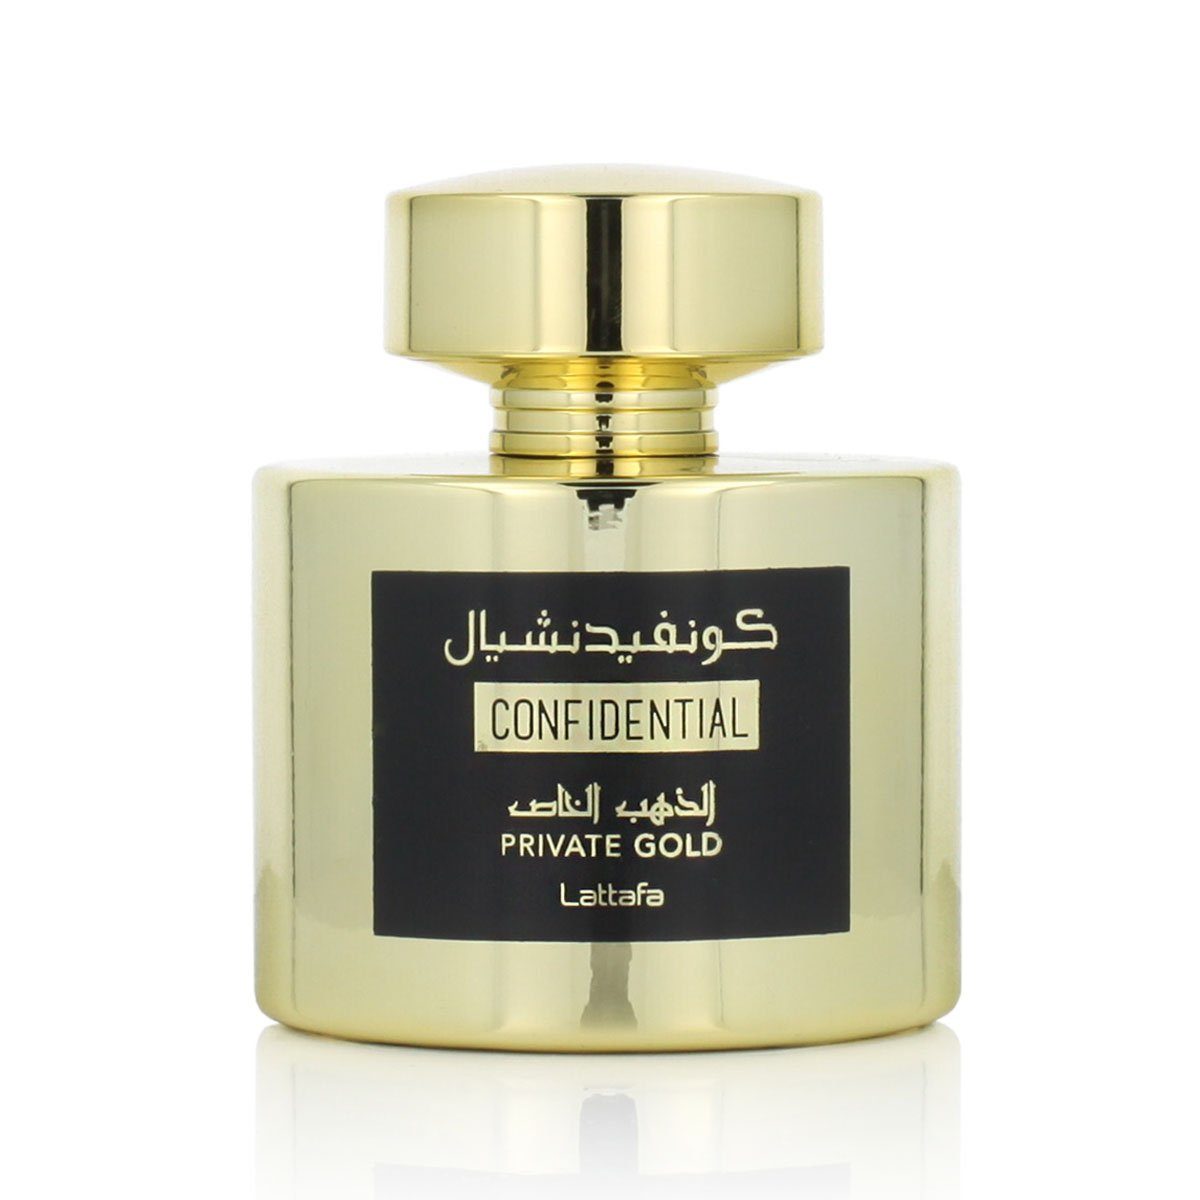 Lattafa Eau Gold Private de Confidential Parfum